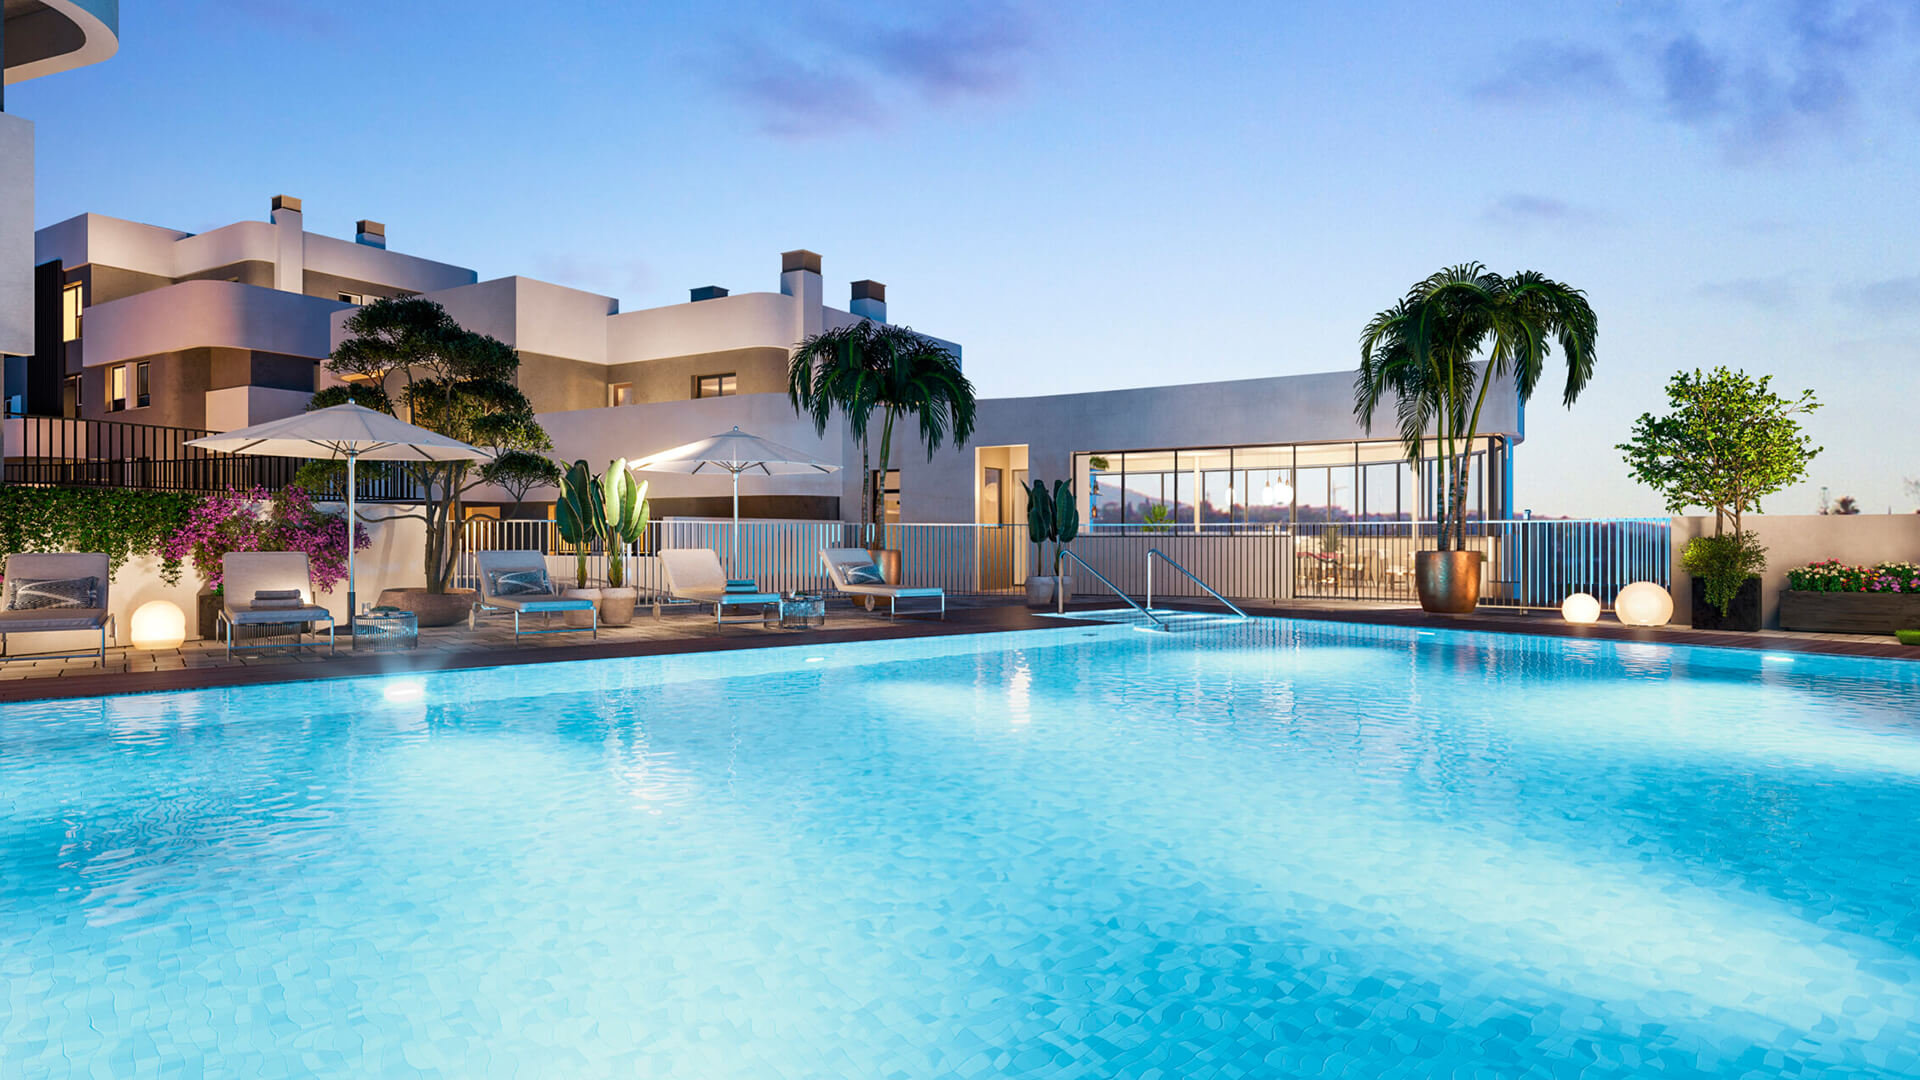 Origin Marbella - New Apartments For Sale